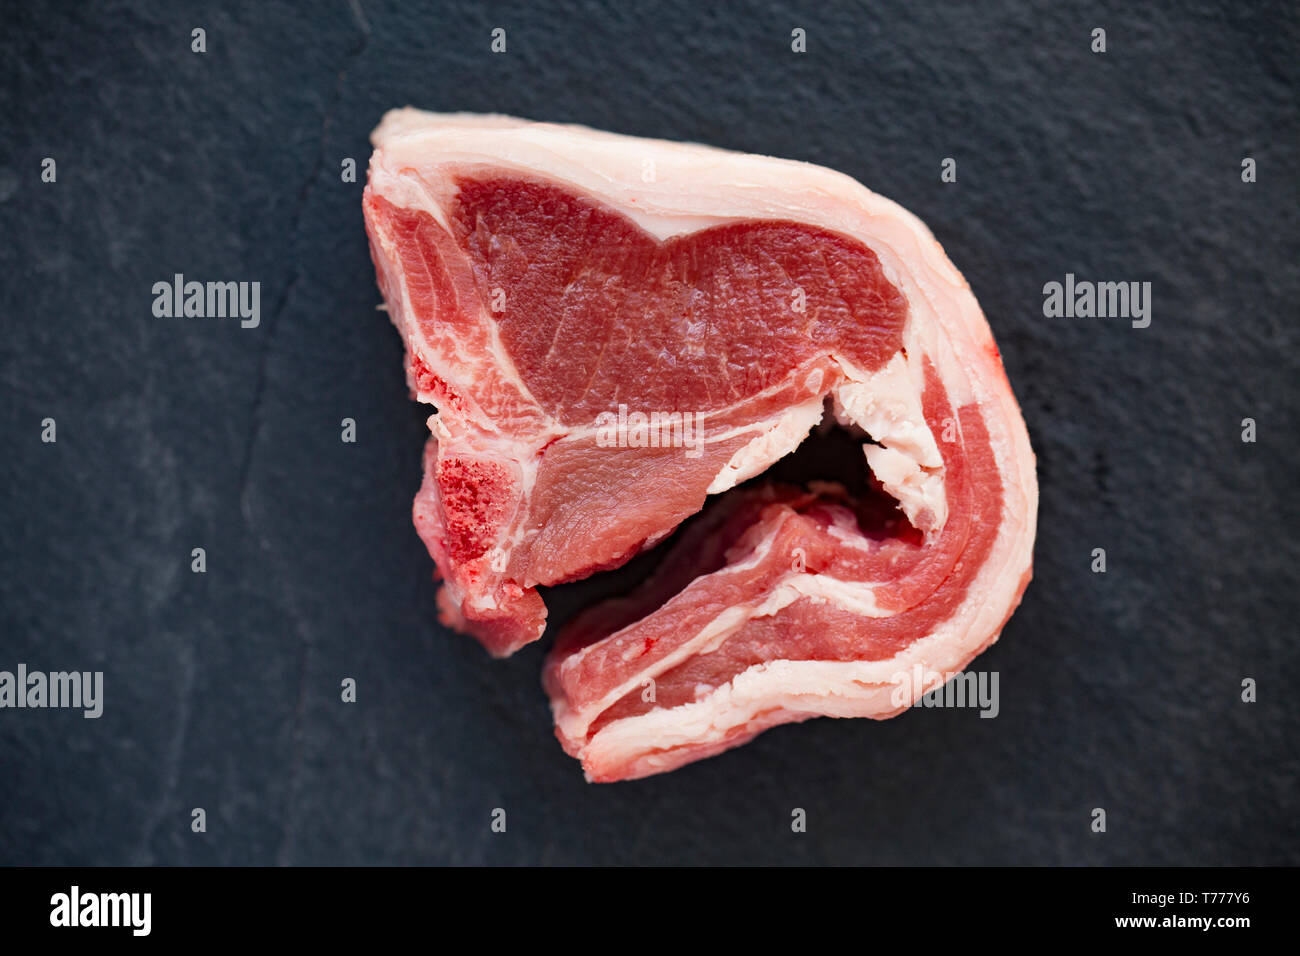 Una sola, crudos y sin cocer British lamb chop compradas en un supermercado en el Reino Unido y se muestran en un fondo de pizarra. Dorset, Inglaterra GB Foto de stock